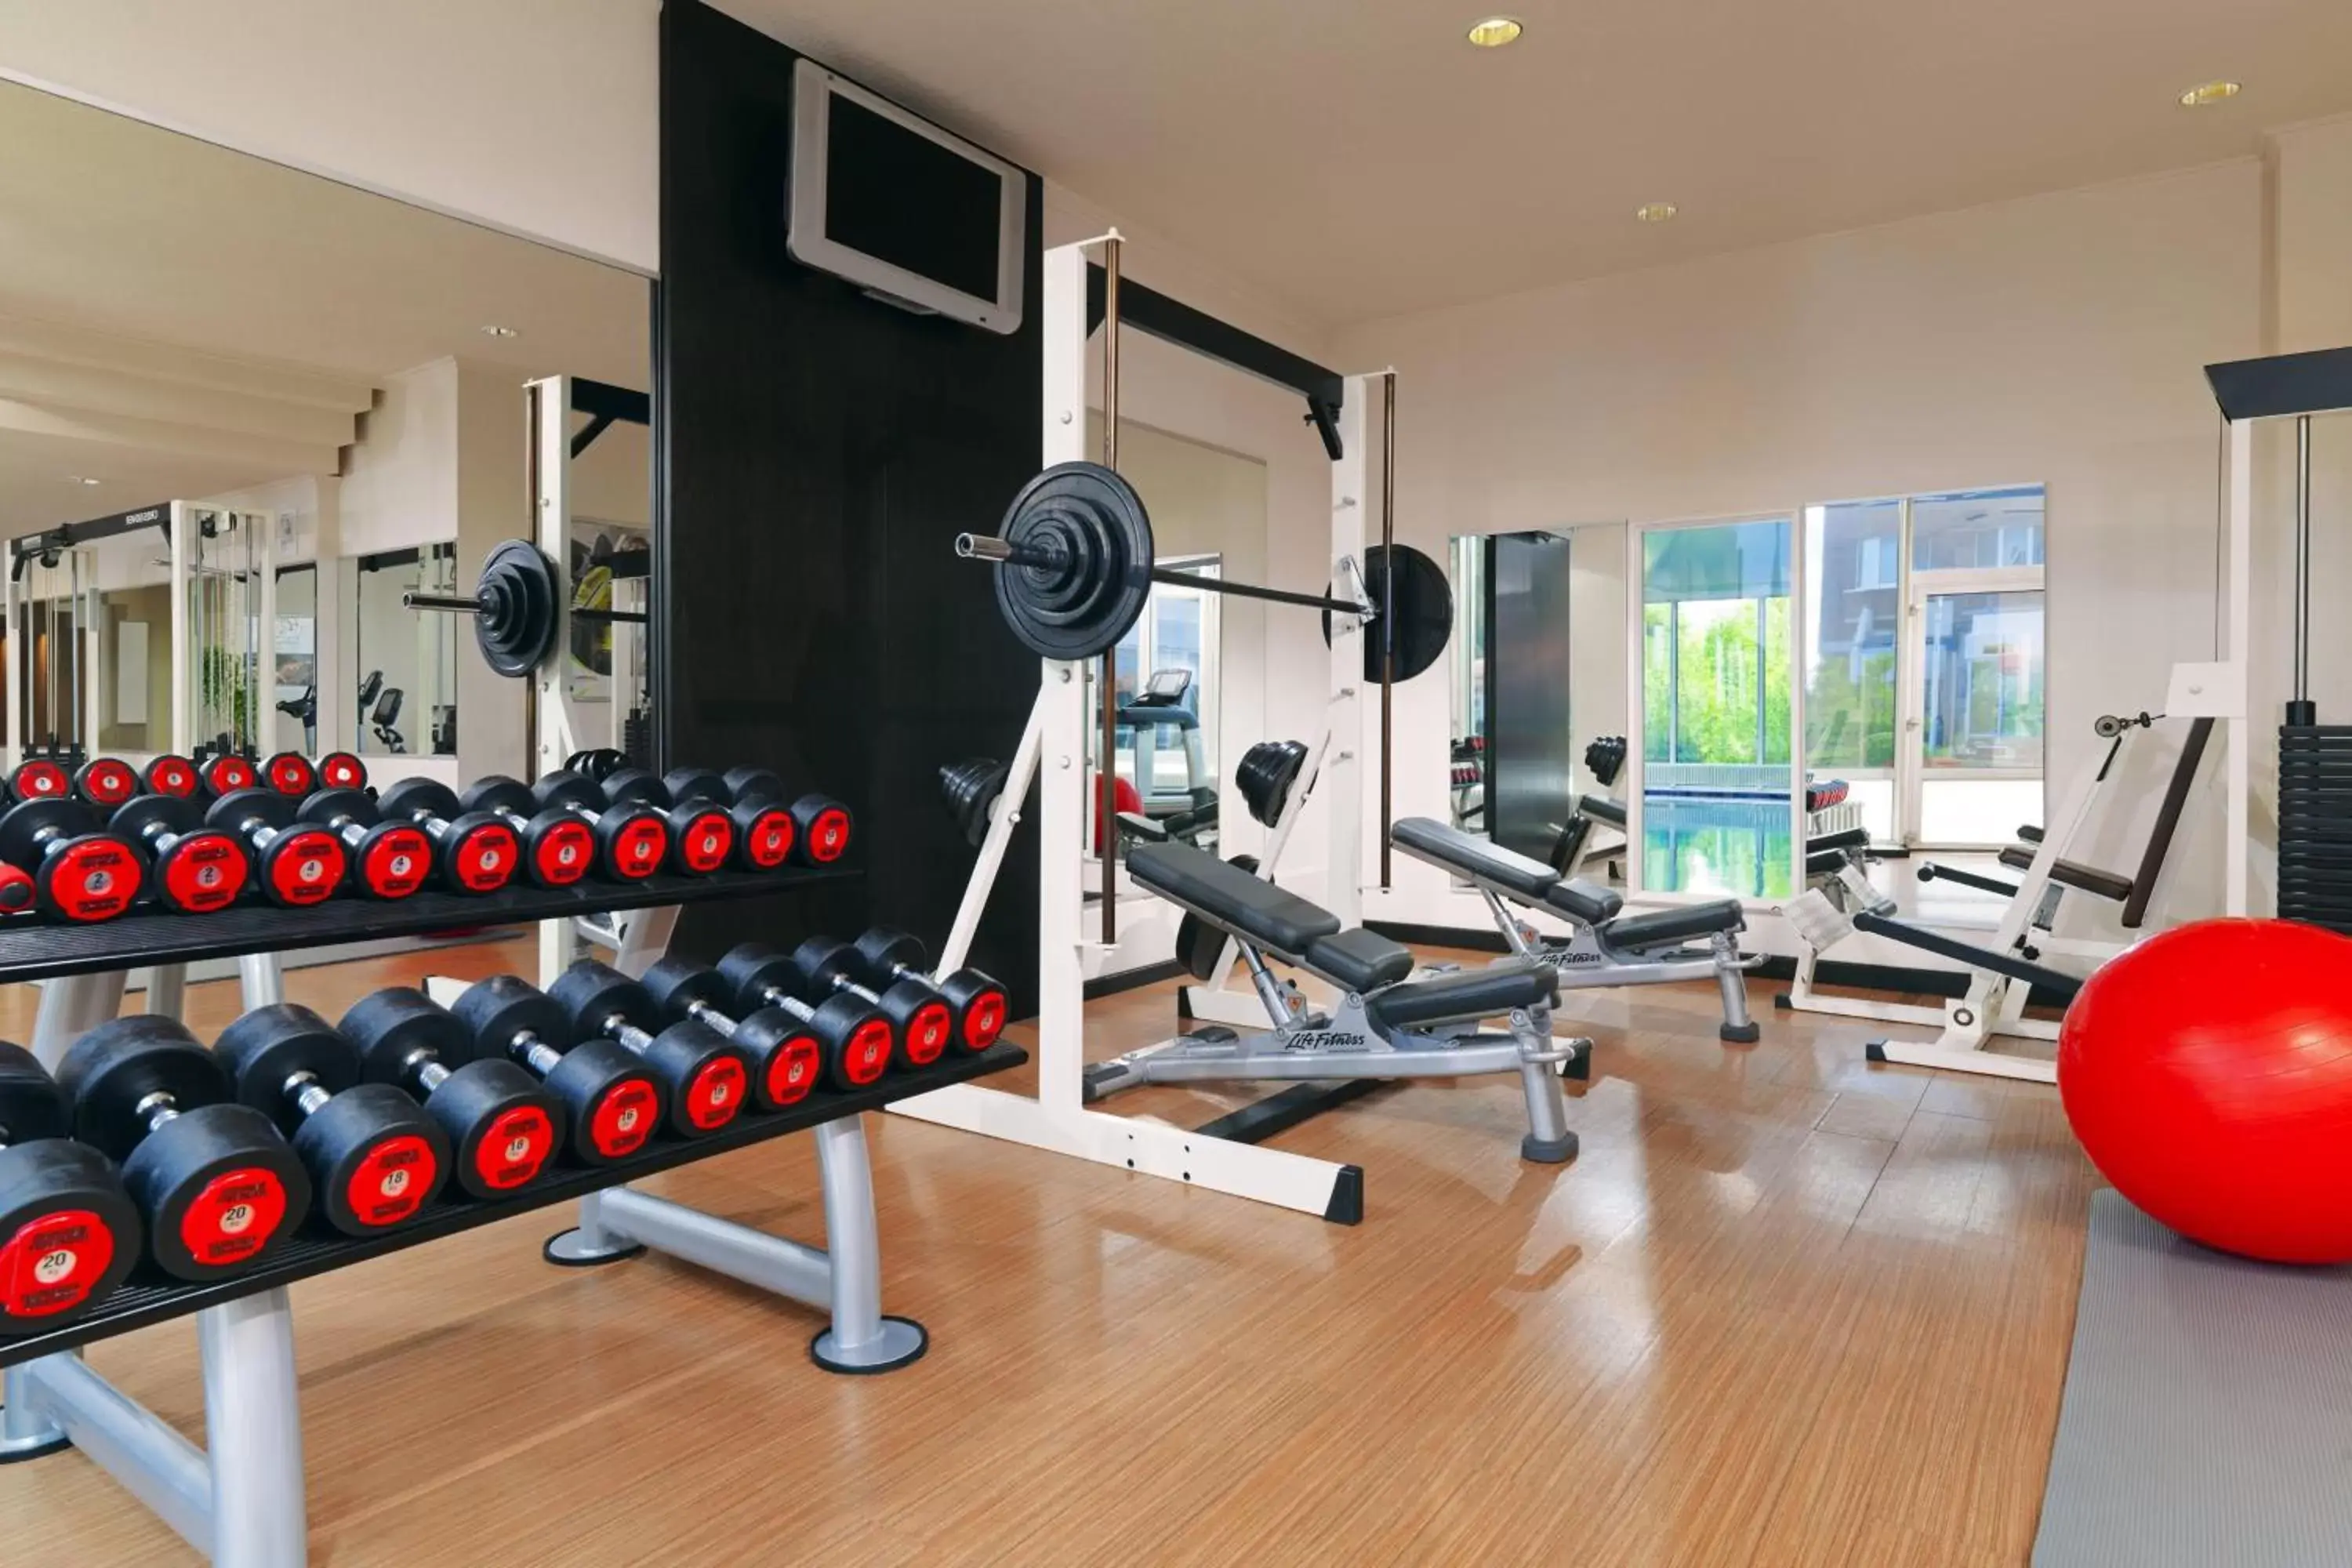 Fitness centre/facilities, Fitness Center/Facilities in Heidelberg Marriott Hotel